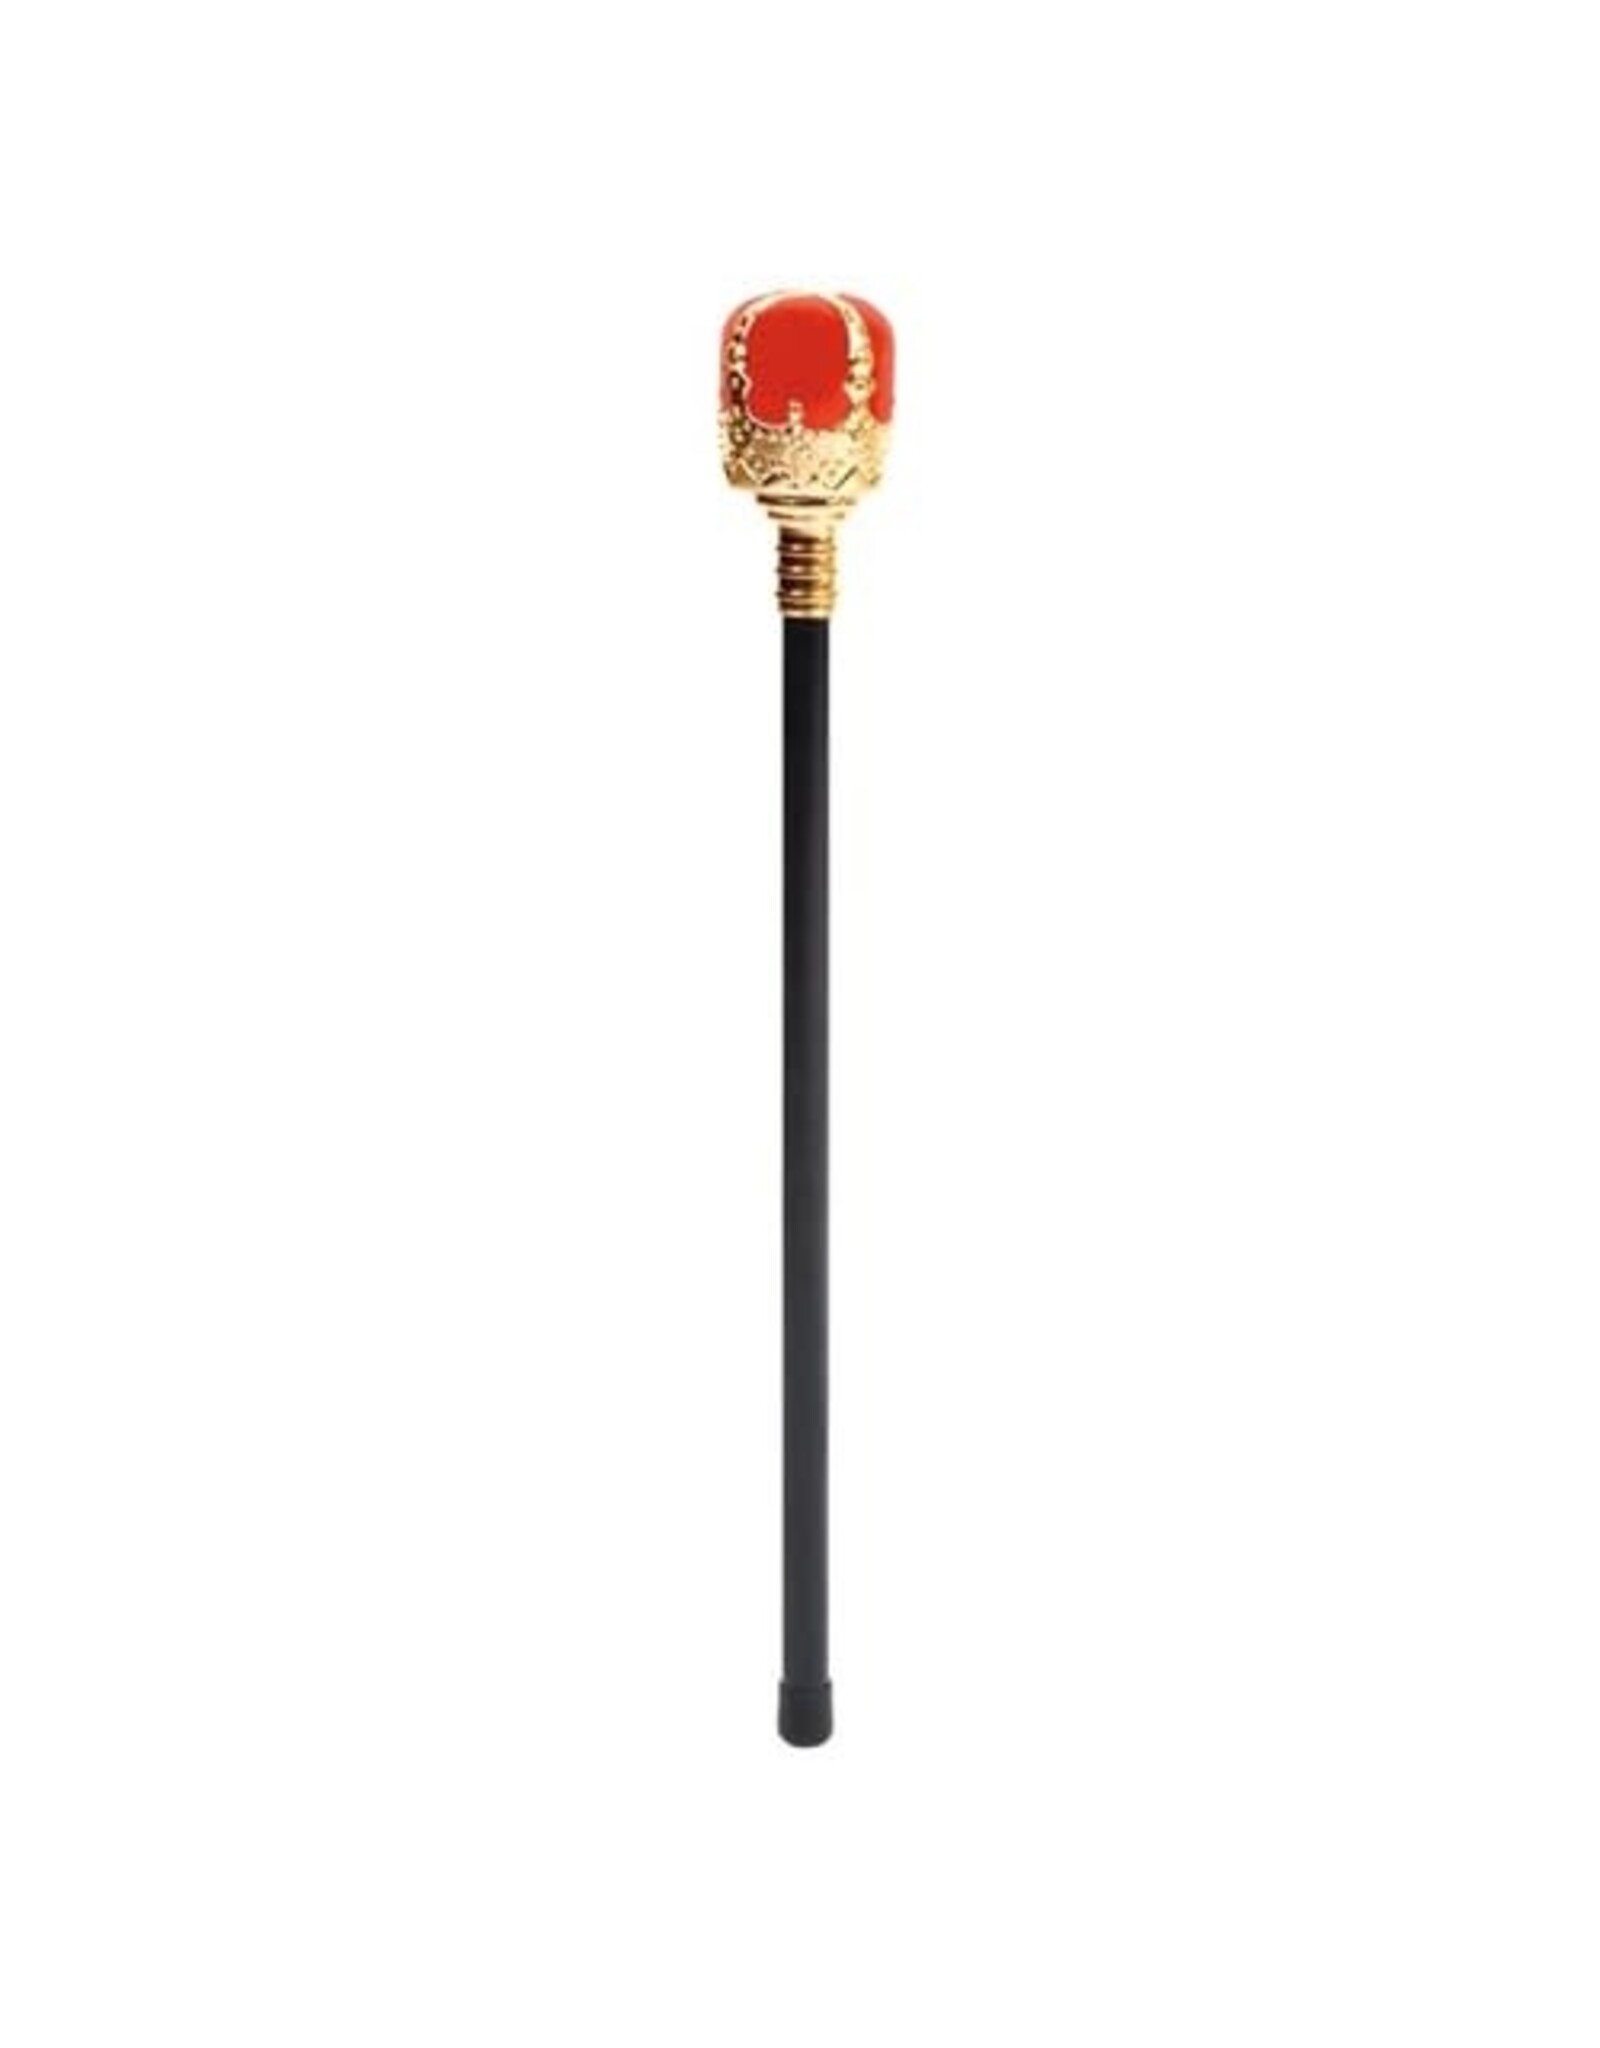 Koningsscepter (48 cm)